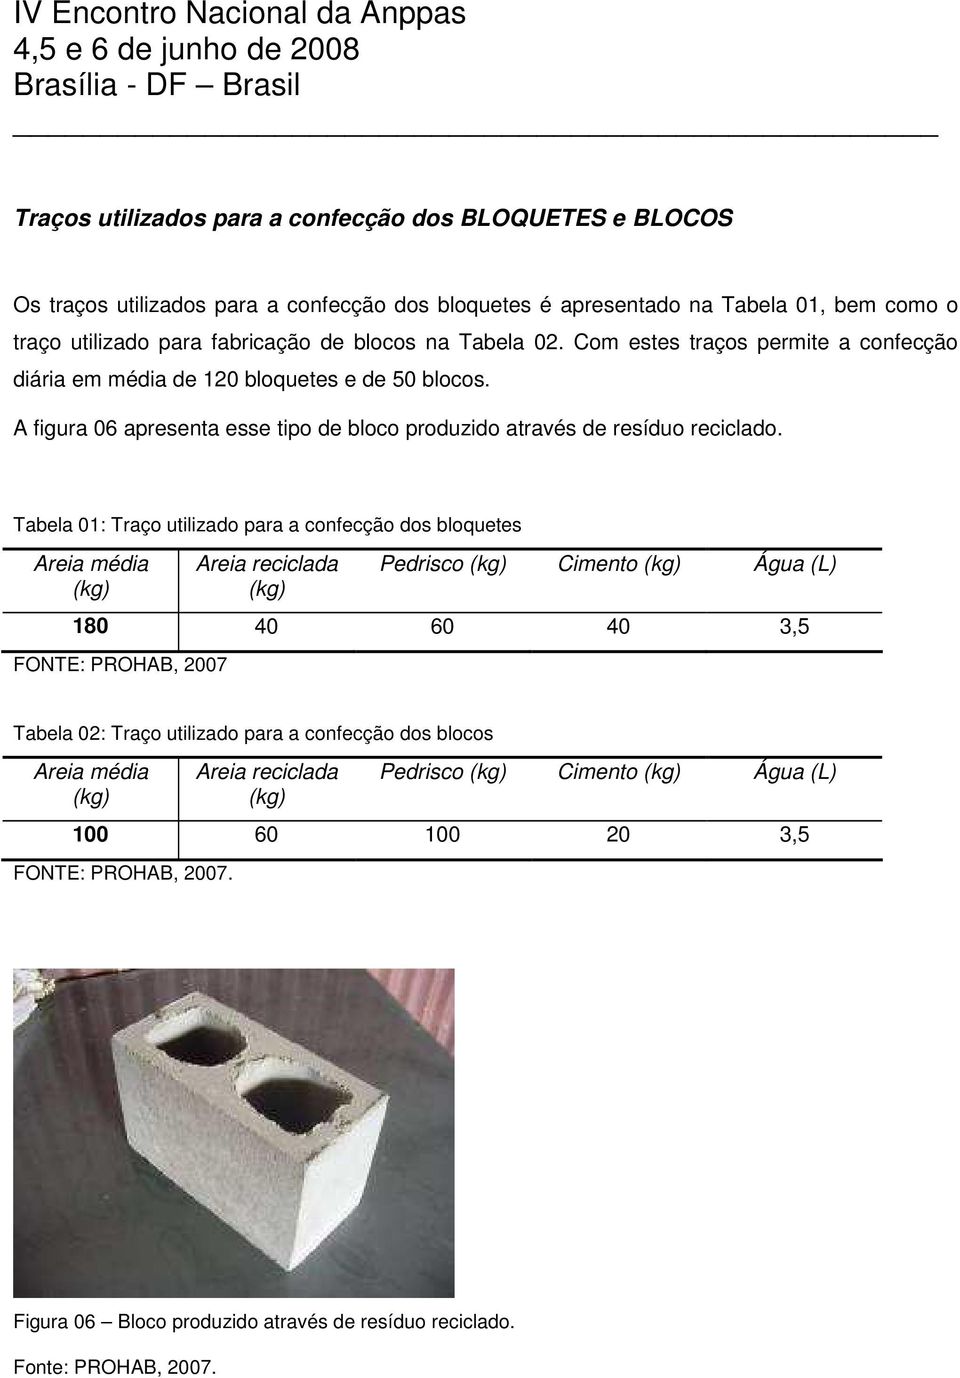 Tabela 01: Traço utilizado para a confecção dos bloquetes Areia média (kg) Areia reciclada (kg) Pedrisco (kg) Cimento (kg) Água (L) 180 40 60 40 3,5 FONTE: PROHAB, 2007 Tabela 02: Traço utilizado